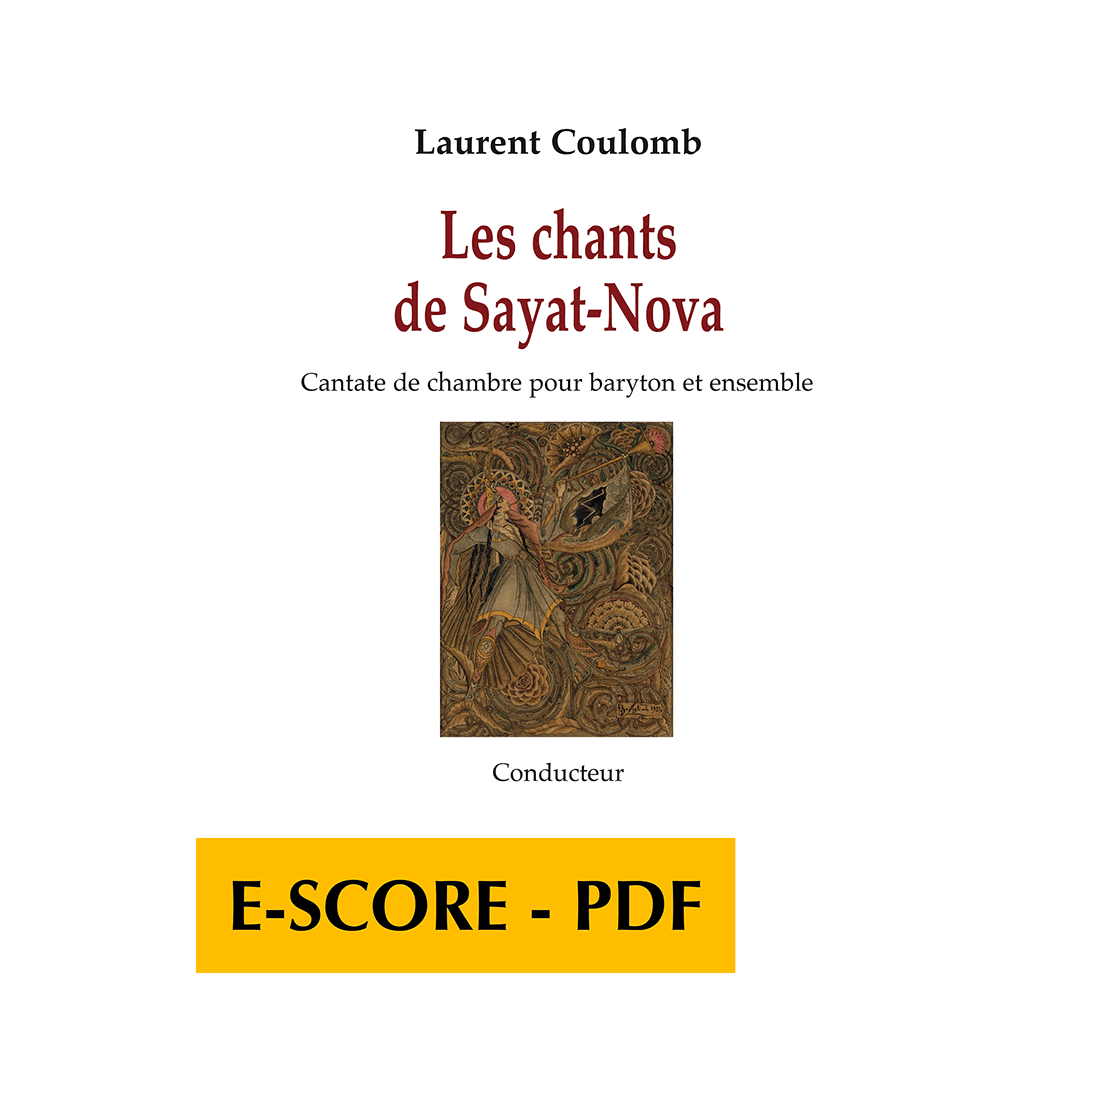 Les chants de Sayat-Nova pour baryton et ensemble (CONDUCTEUR) - E-score PDF